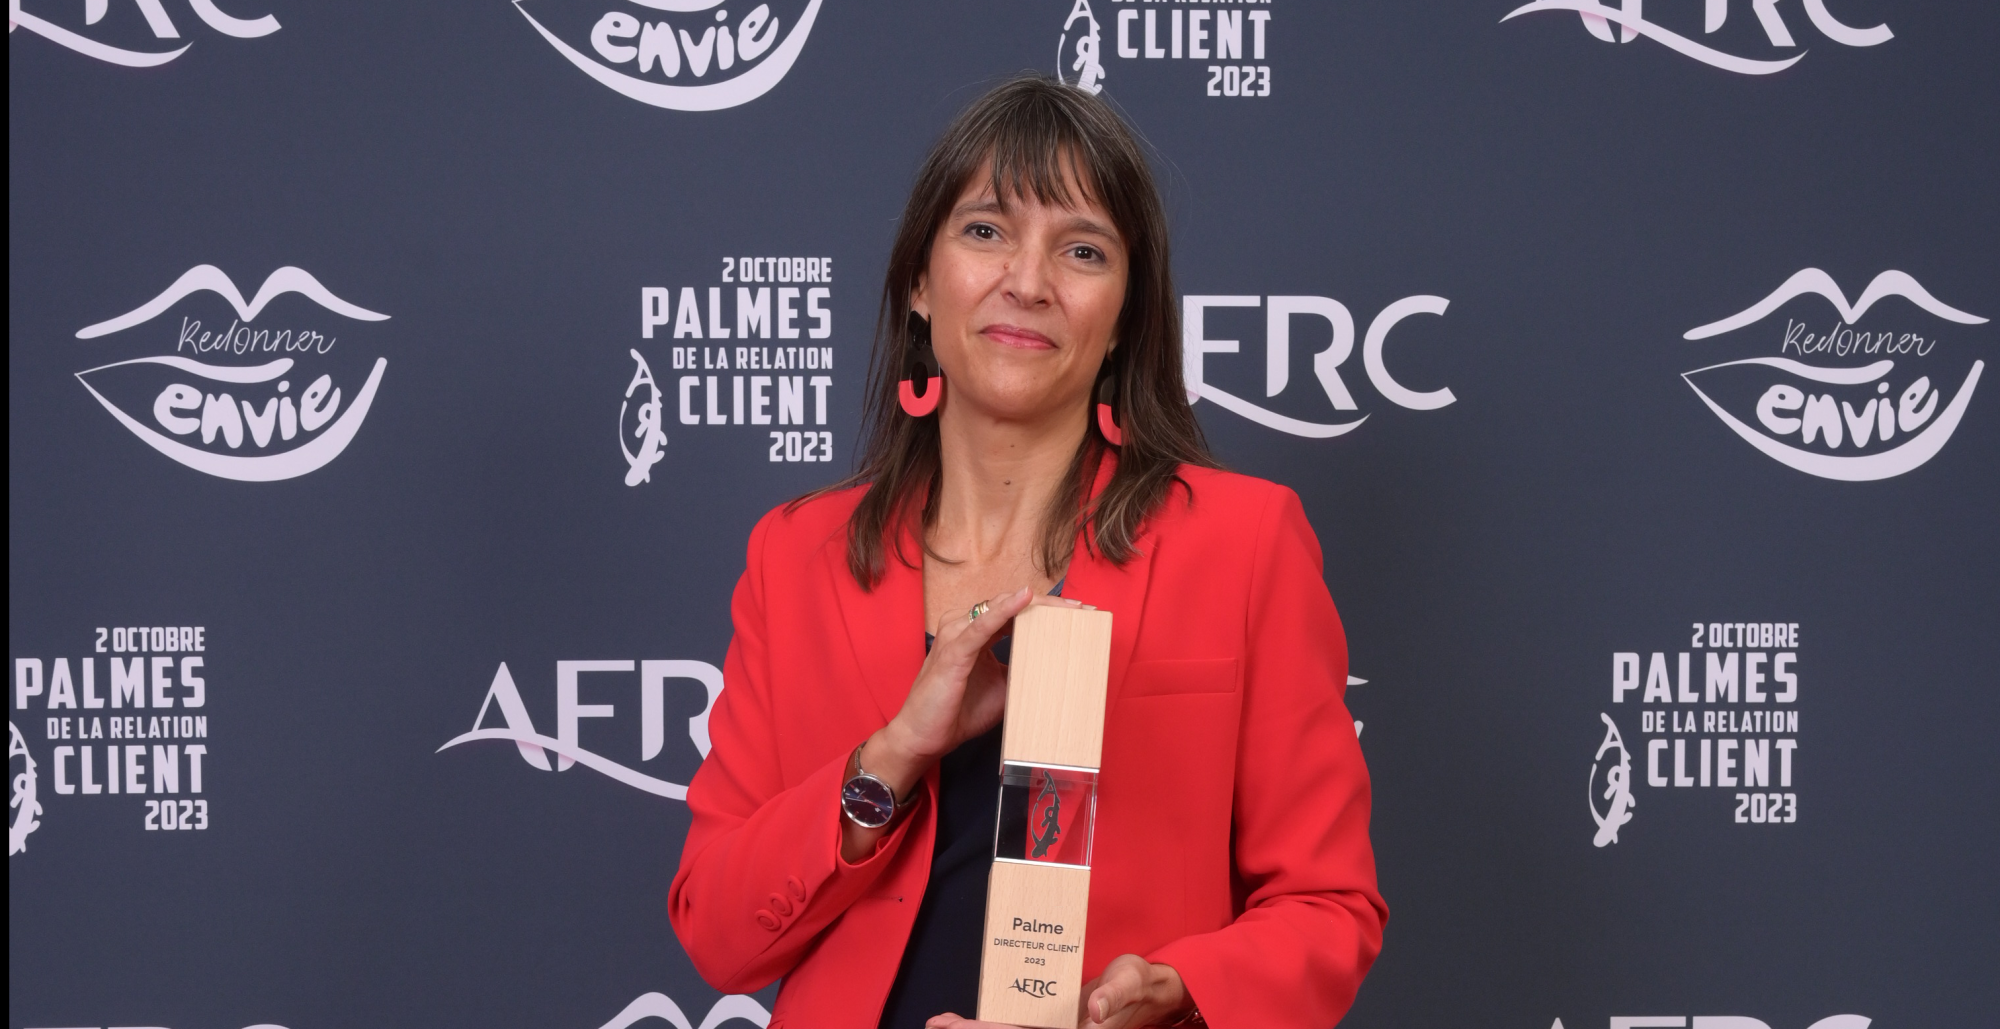 Corinne Cipière, Membre du Comité Exécutif et Directrice de l’Unité Service Client d’Allianz France a été élue Directrice Client de l’année